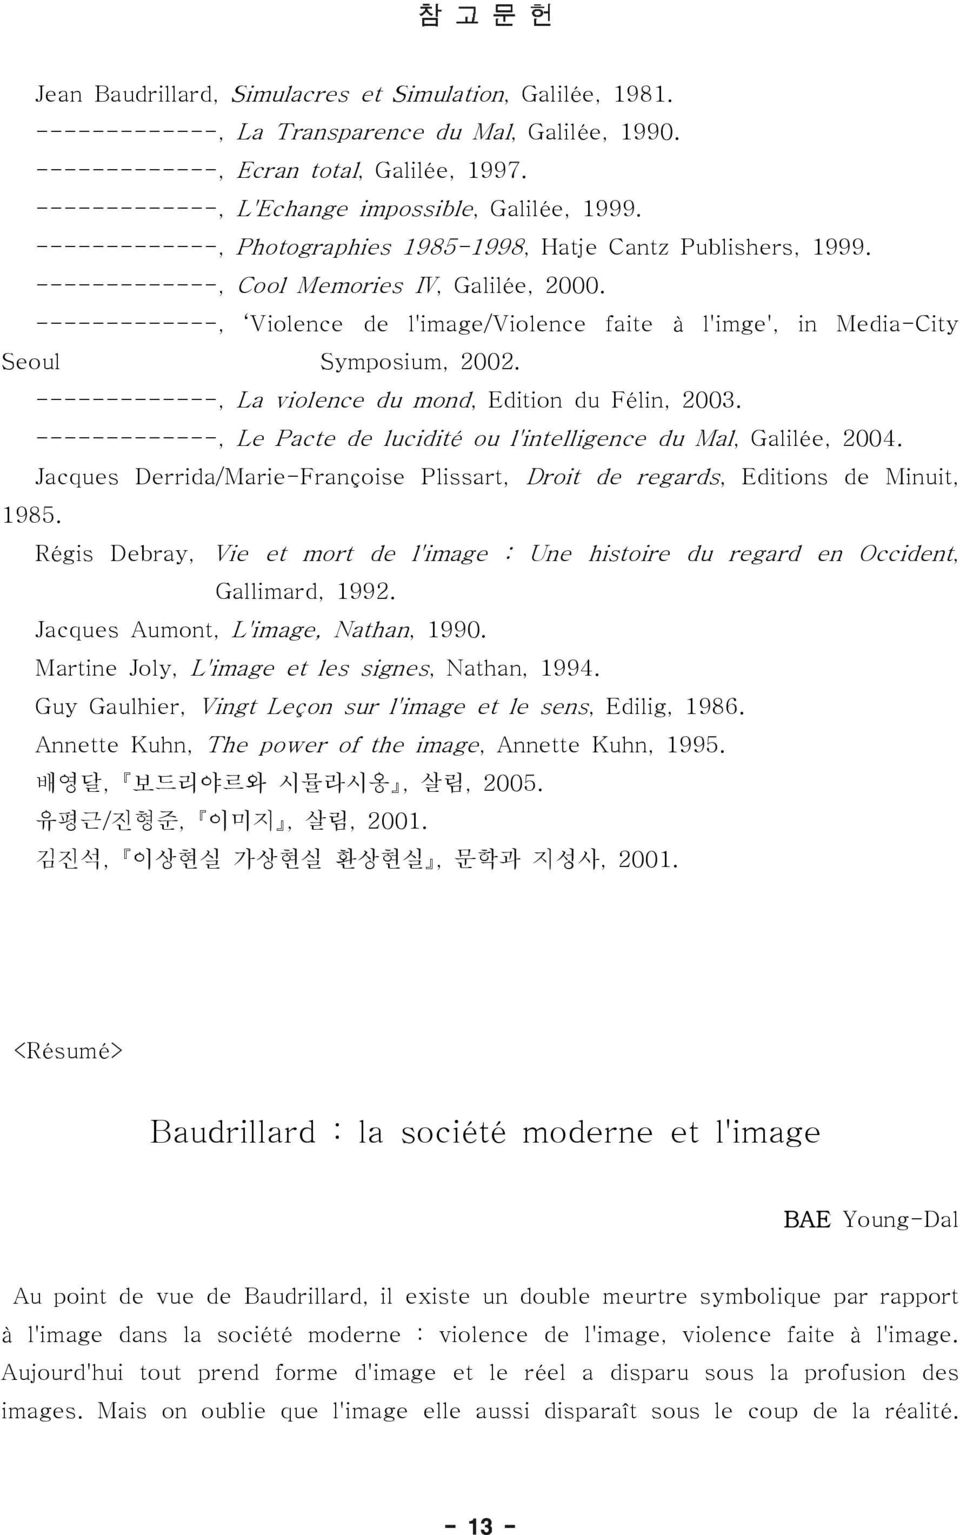 -------------, Violence de l'image/violence faite à l'imge', in Media-City Seoul Symposium, 2002. -------------, La violence du mond, Edition du Félin, 2003.